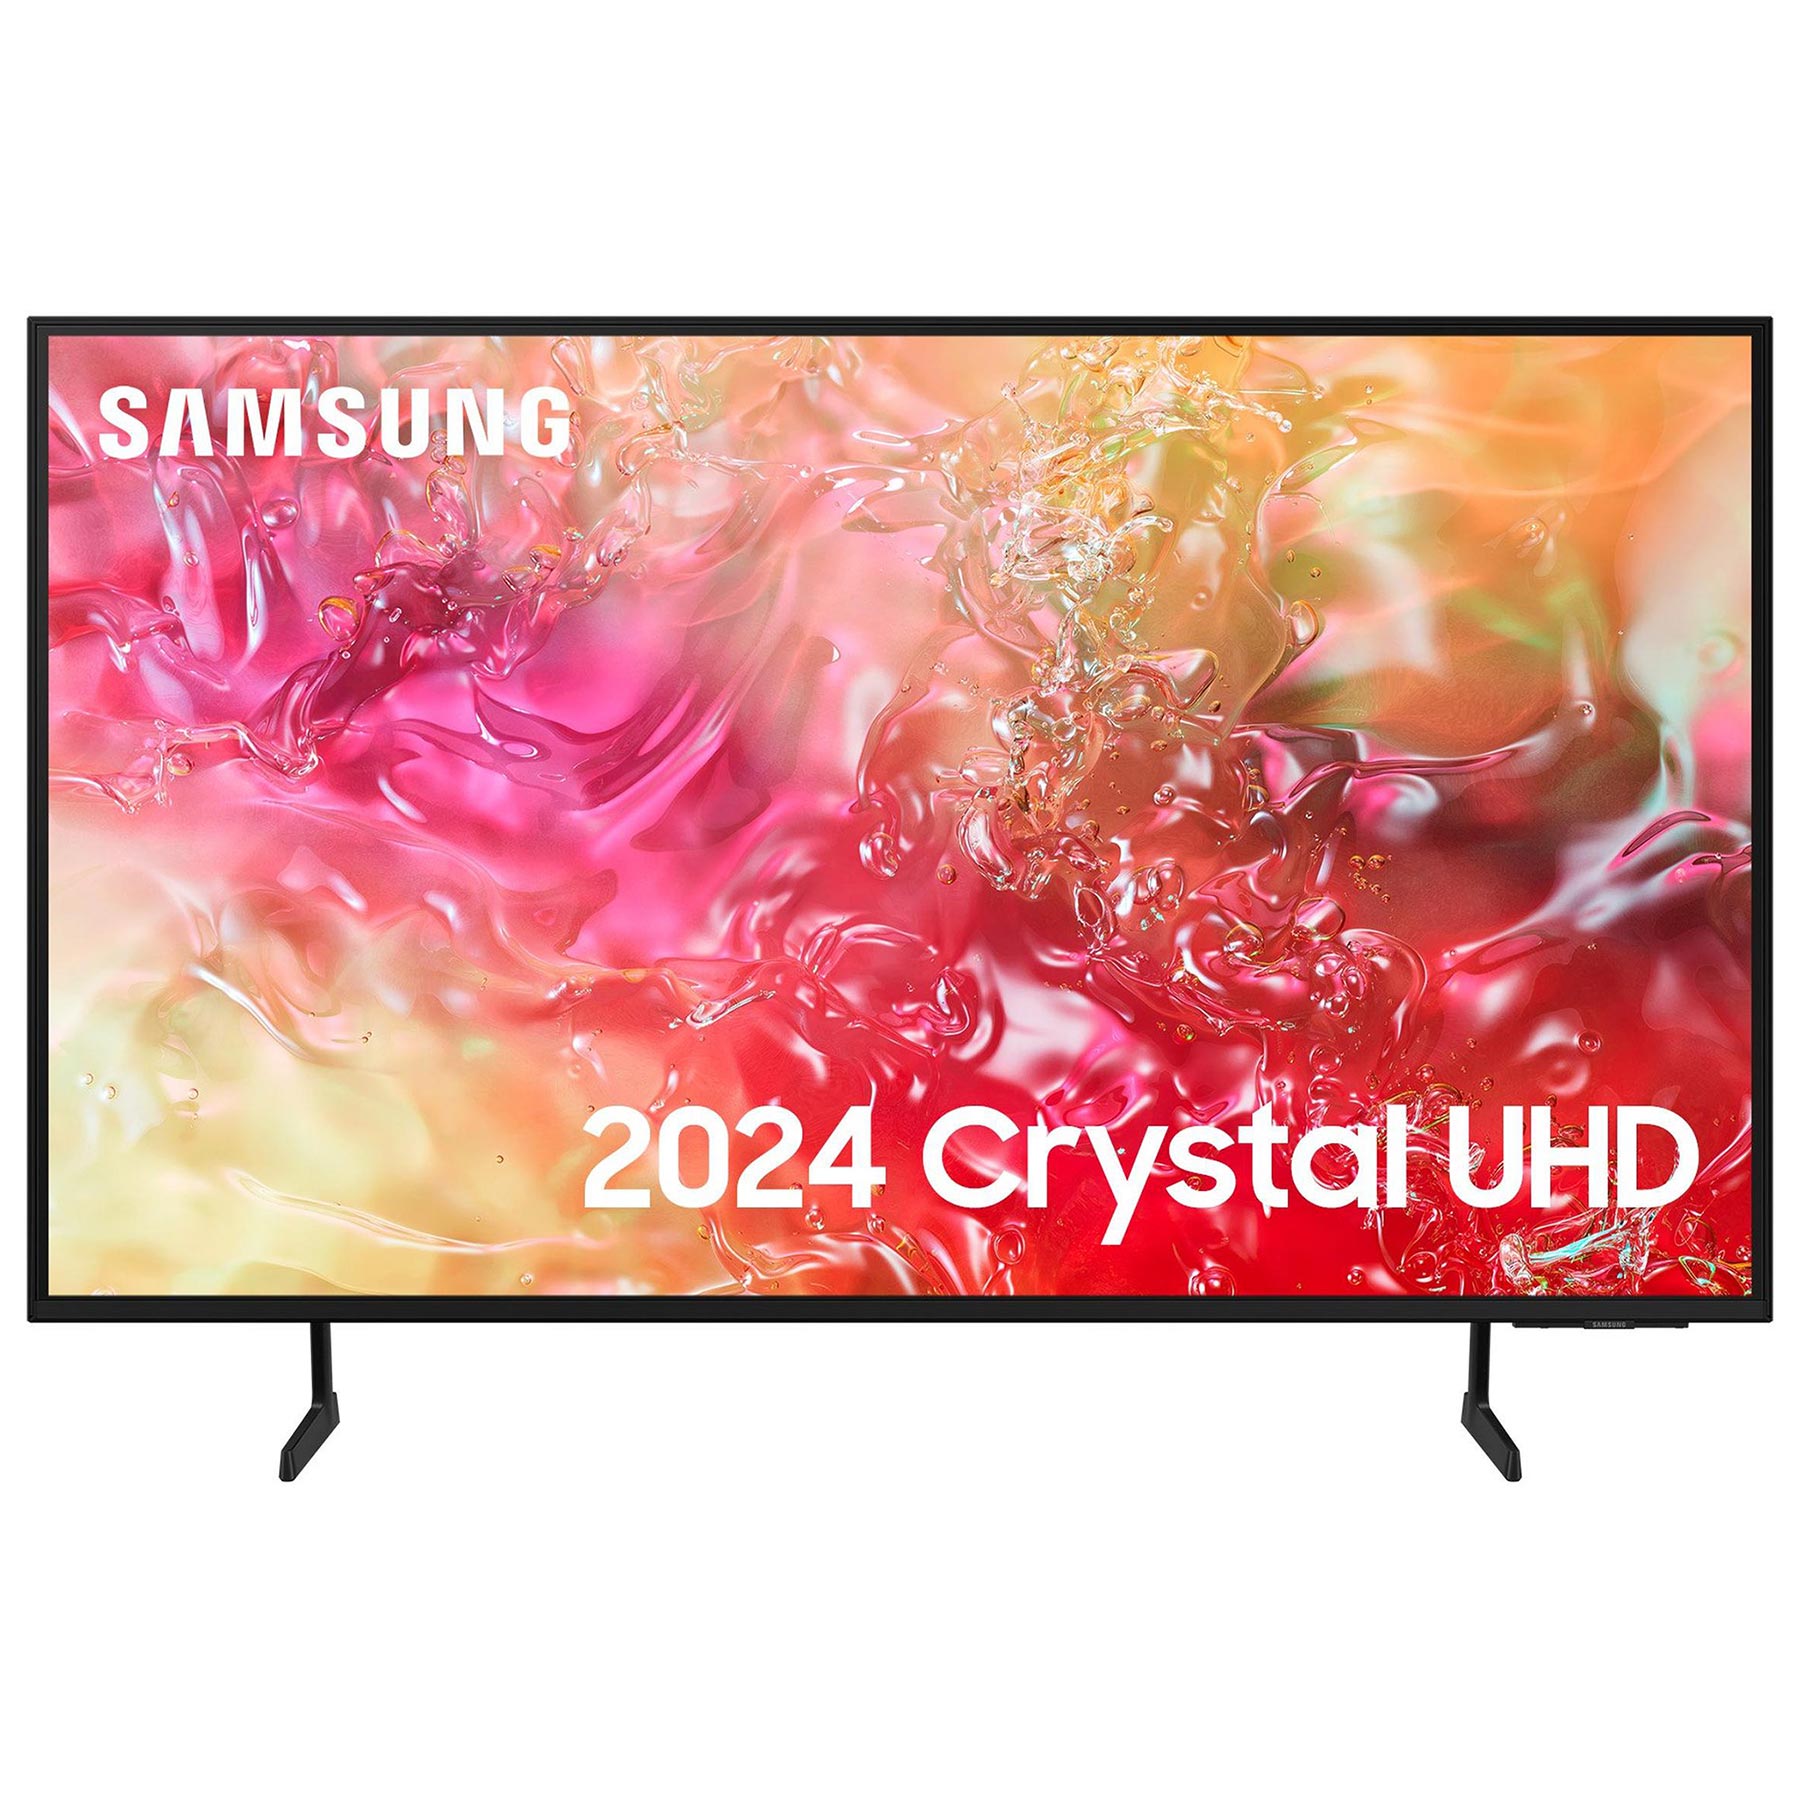 Image of Samsung UE50DU7100 50 4K HDR UHD Smart LED TV HDR10 Q Symphony